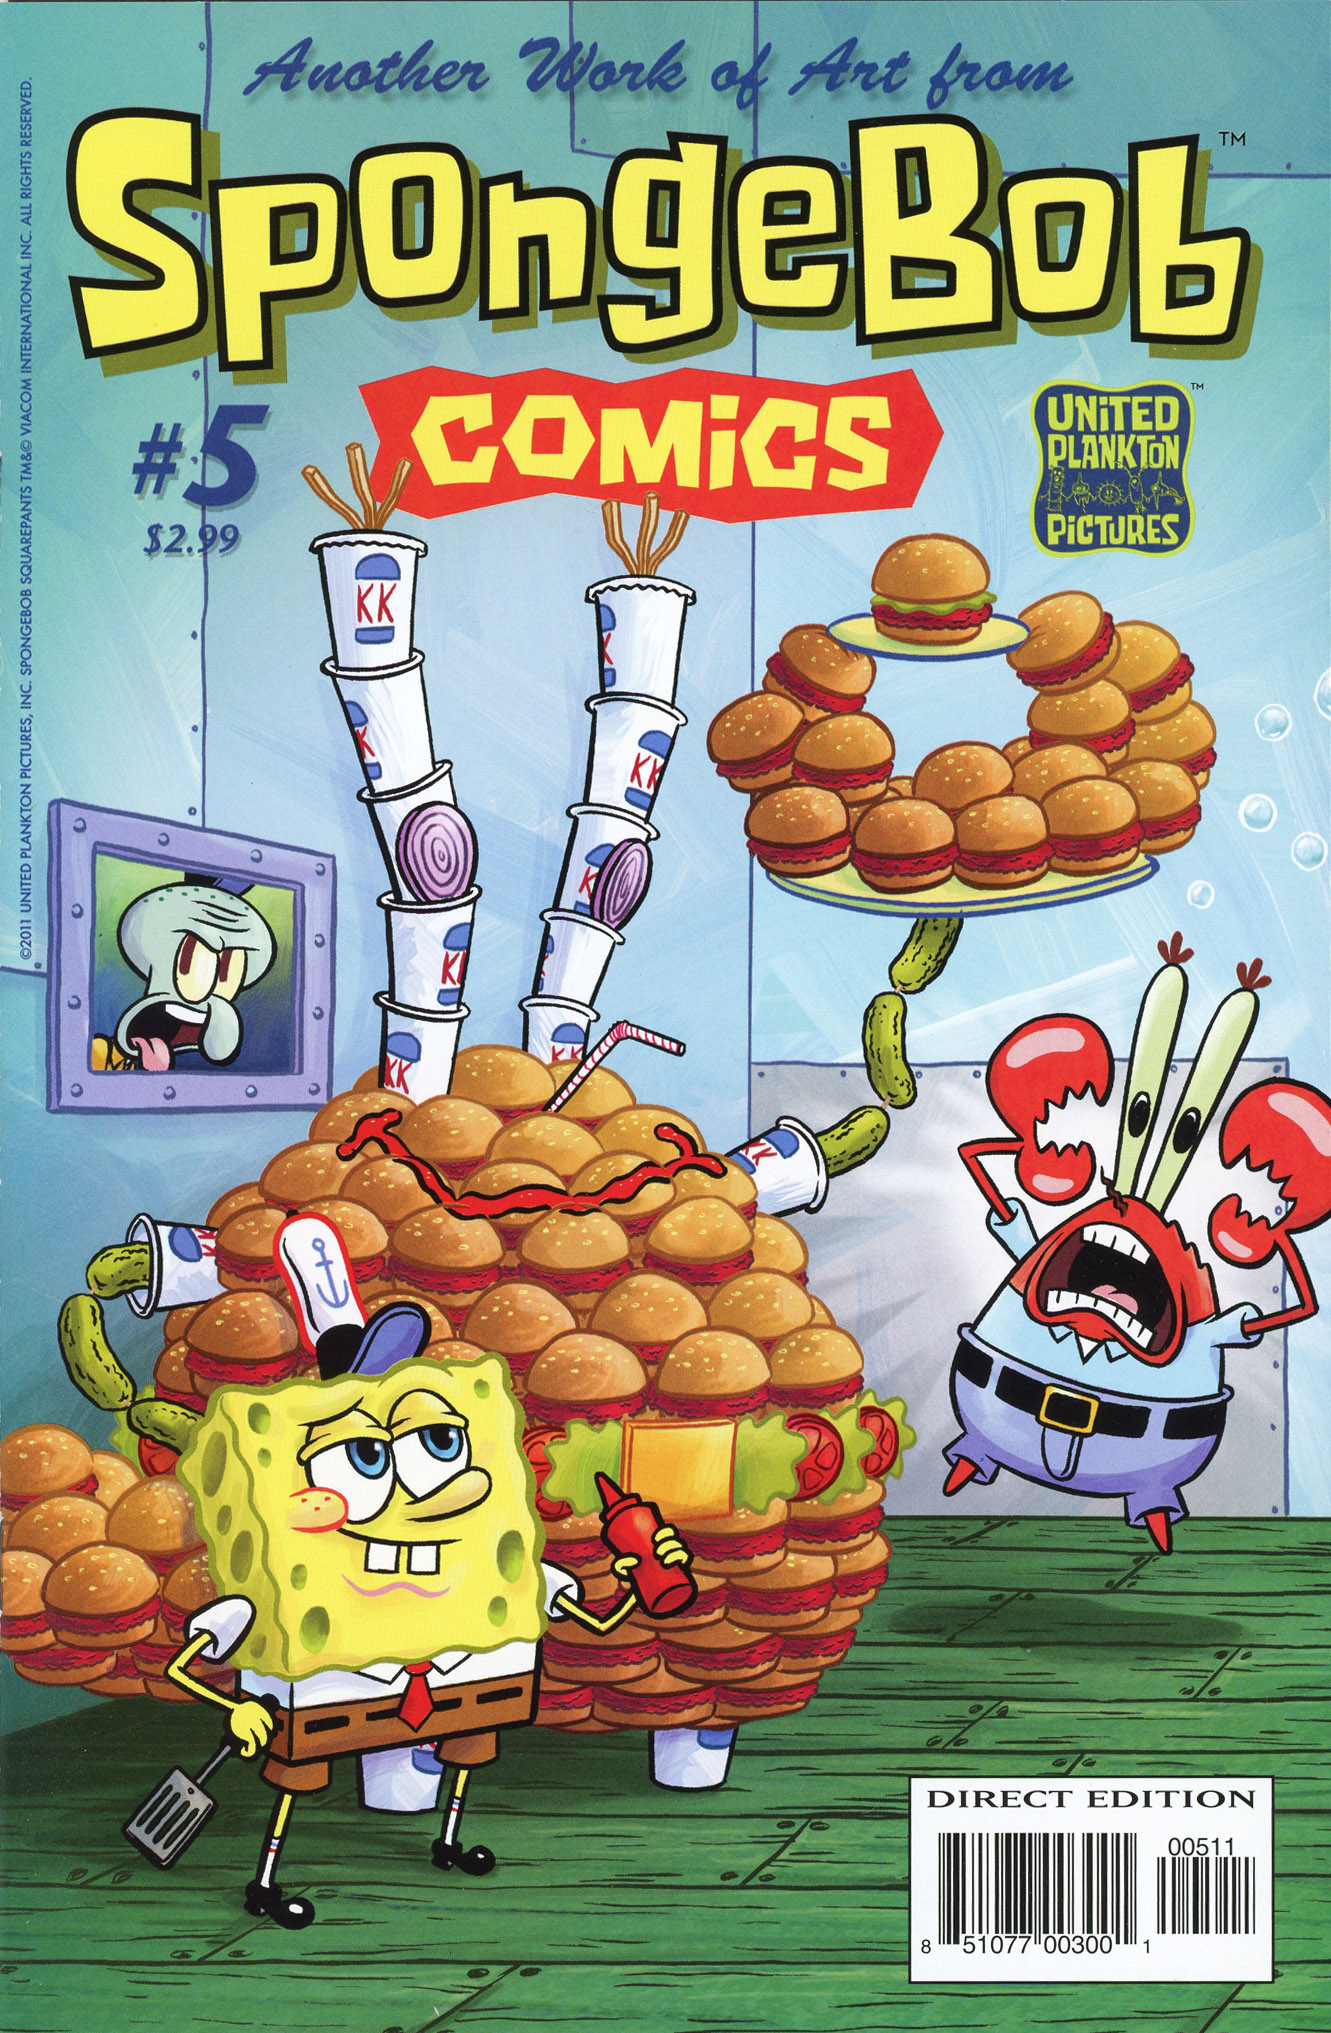 Another Work of Art From SpongeBob Comics